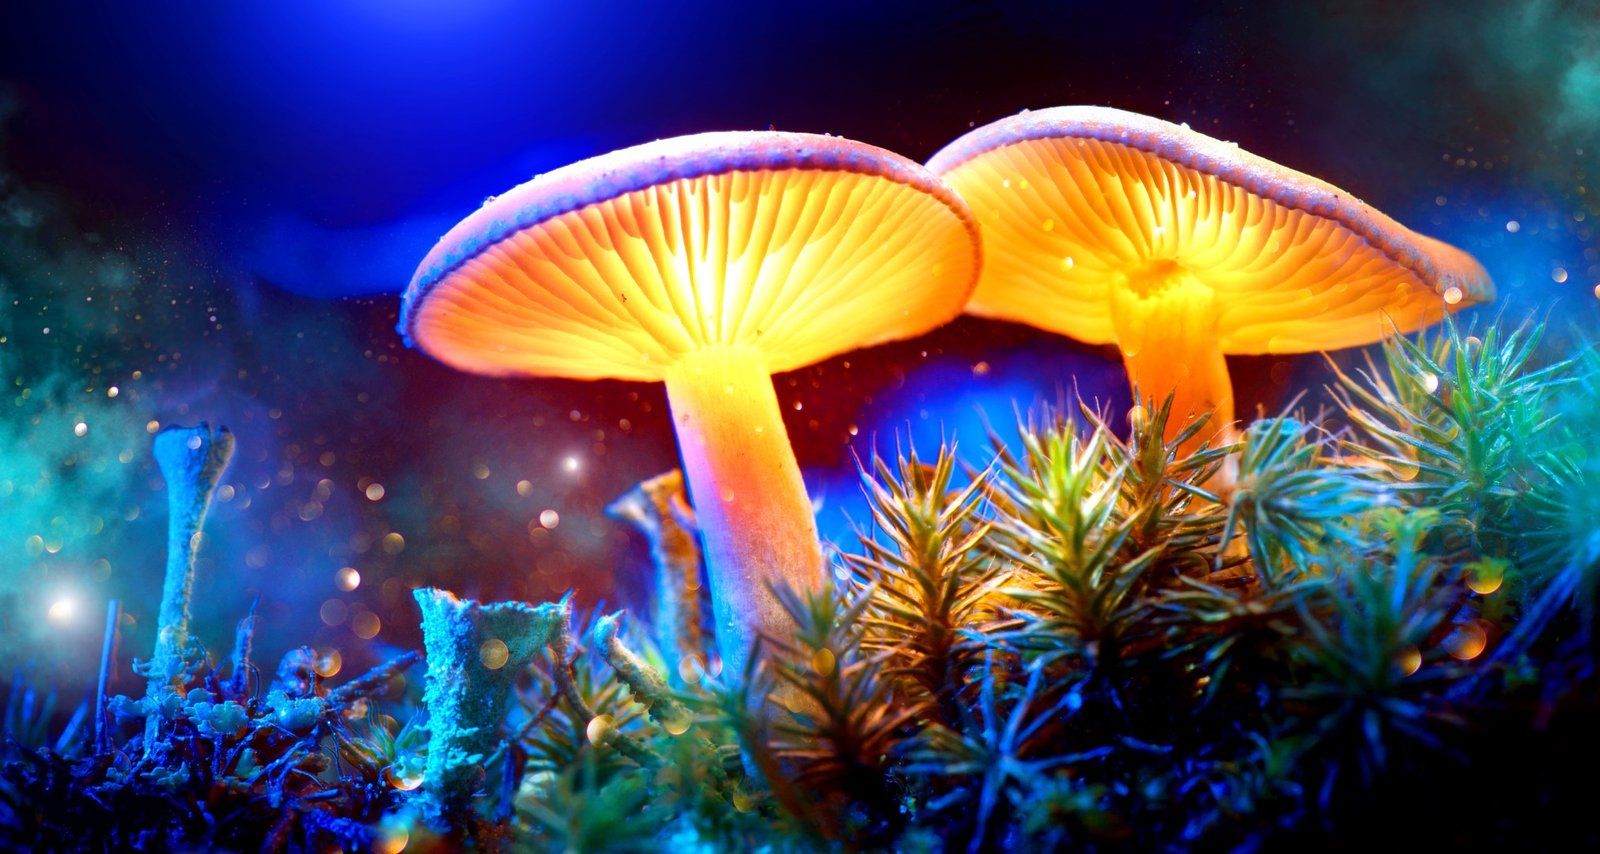 Glowing Fungi Magic Mushrooms